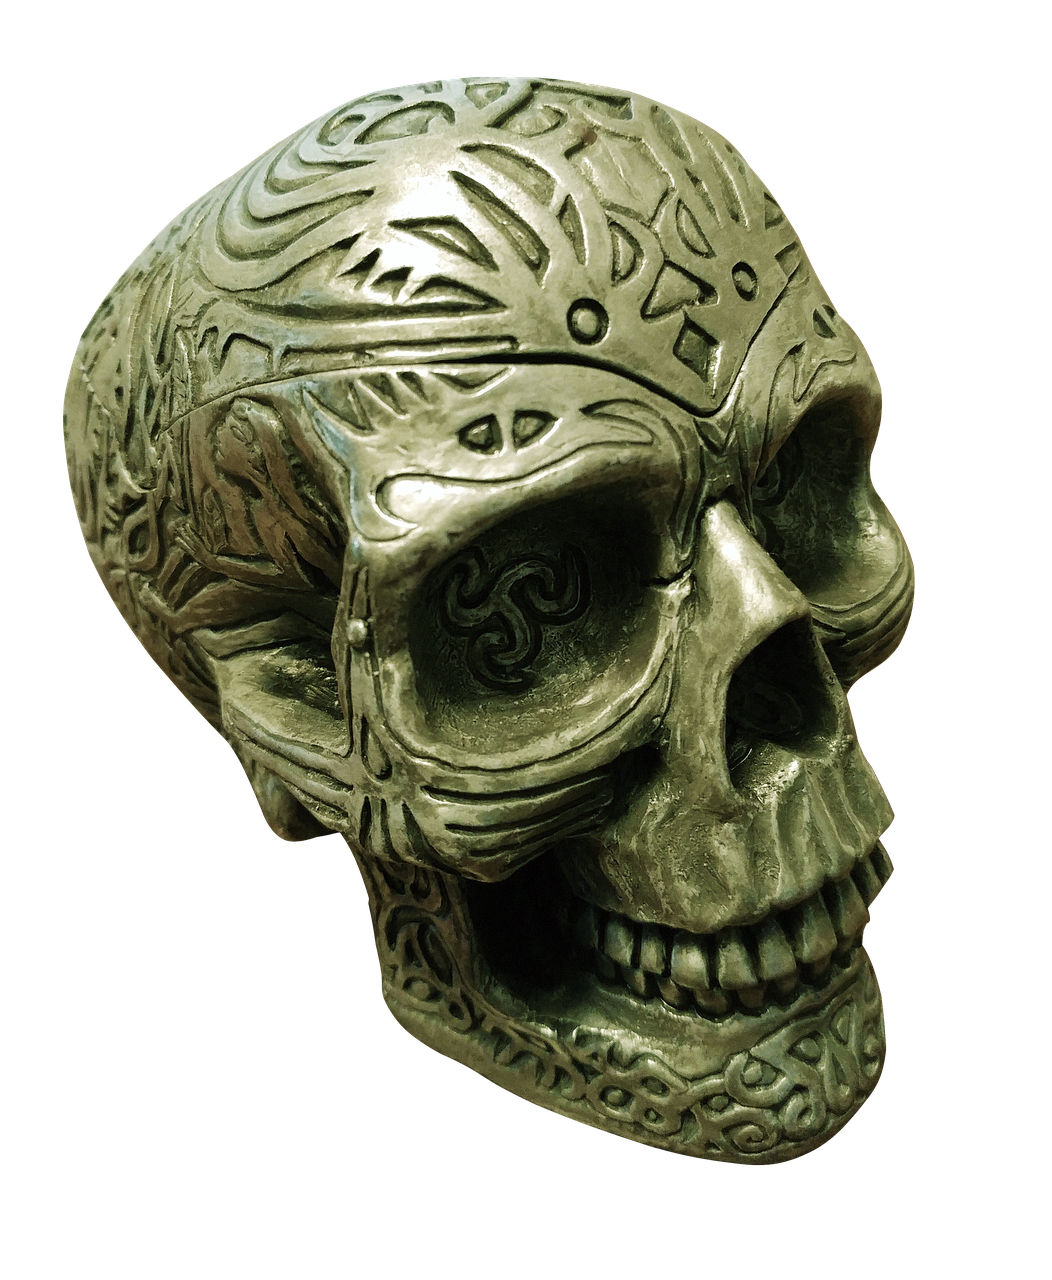 skull spooky scary free photo